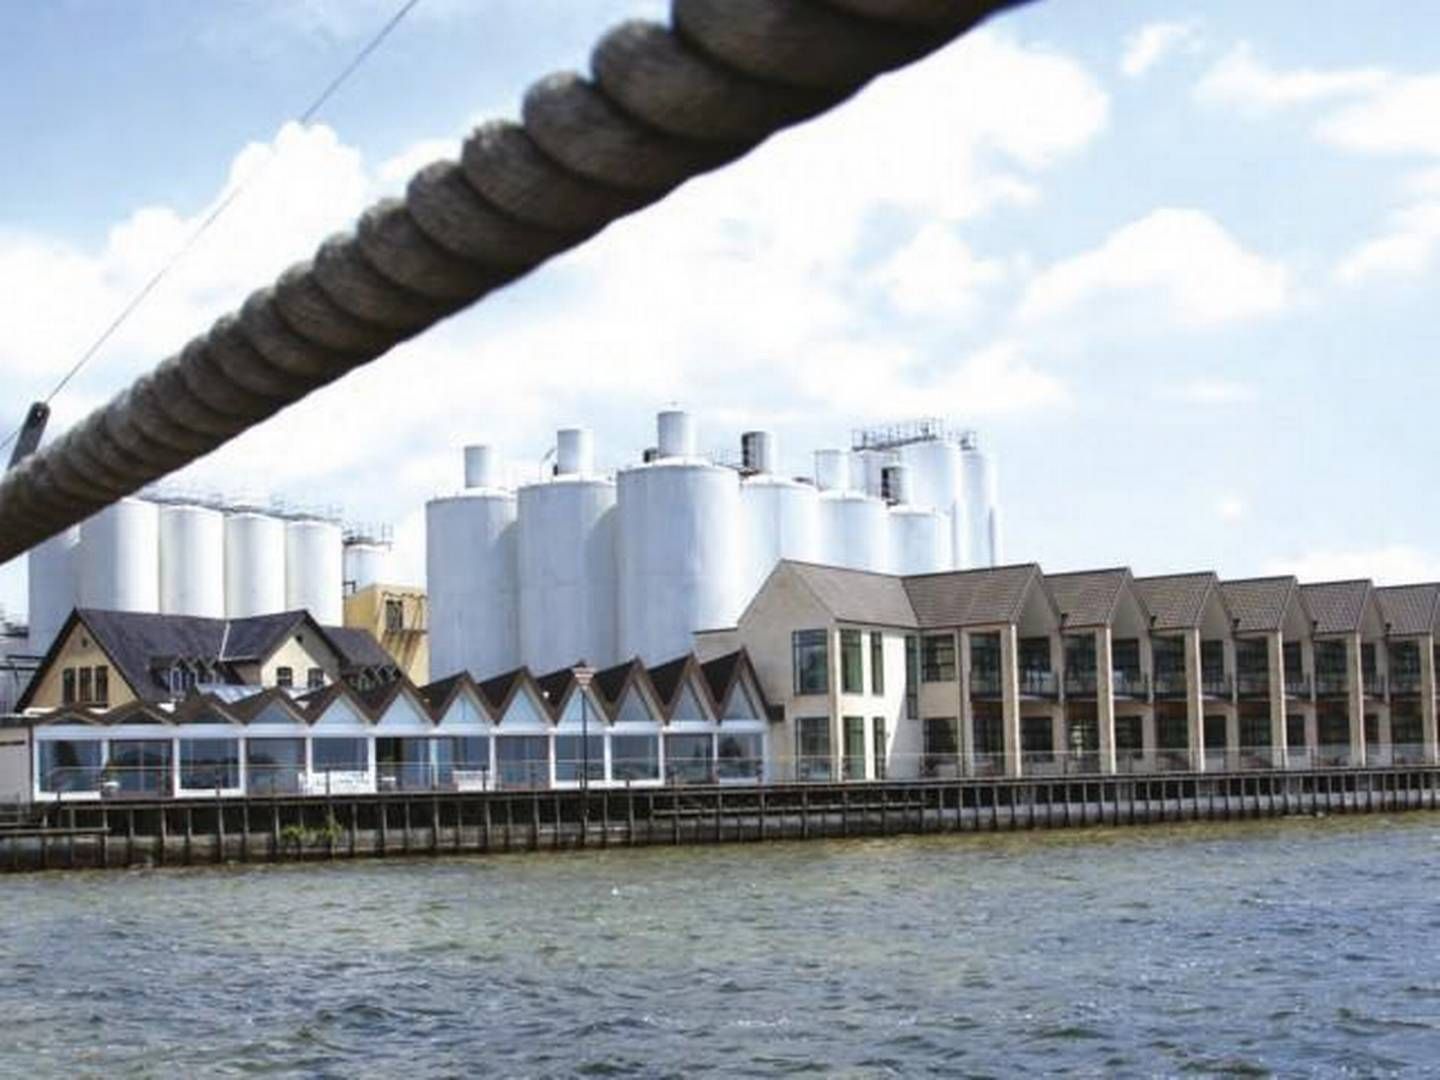 Foruden bryggeriet i Skælskør (billedet) har Harboes bryggerier i Tyskland og Estland. | Foto: Presse/Harboes